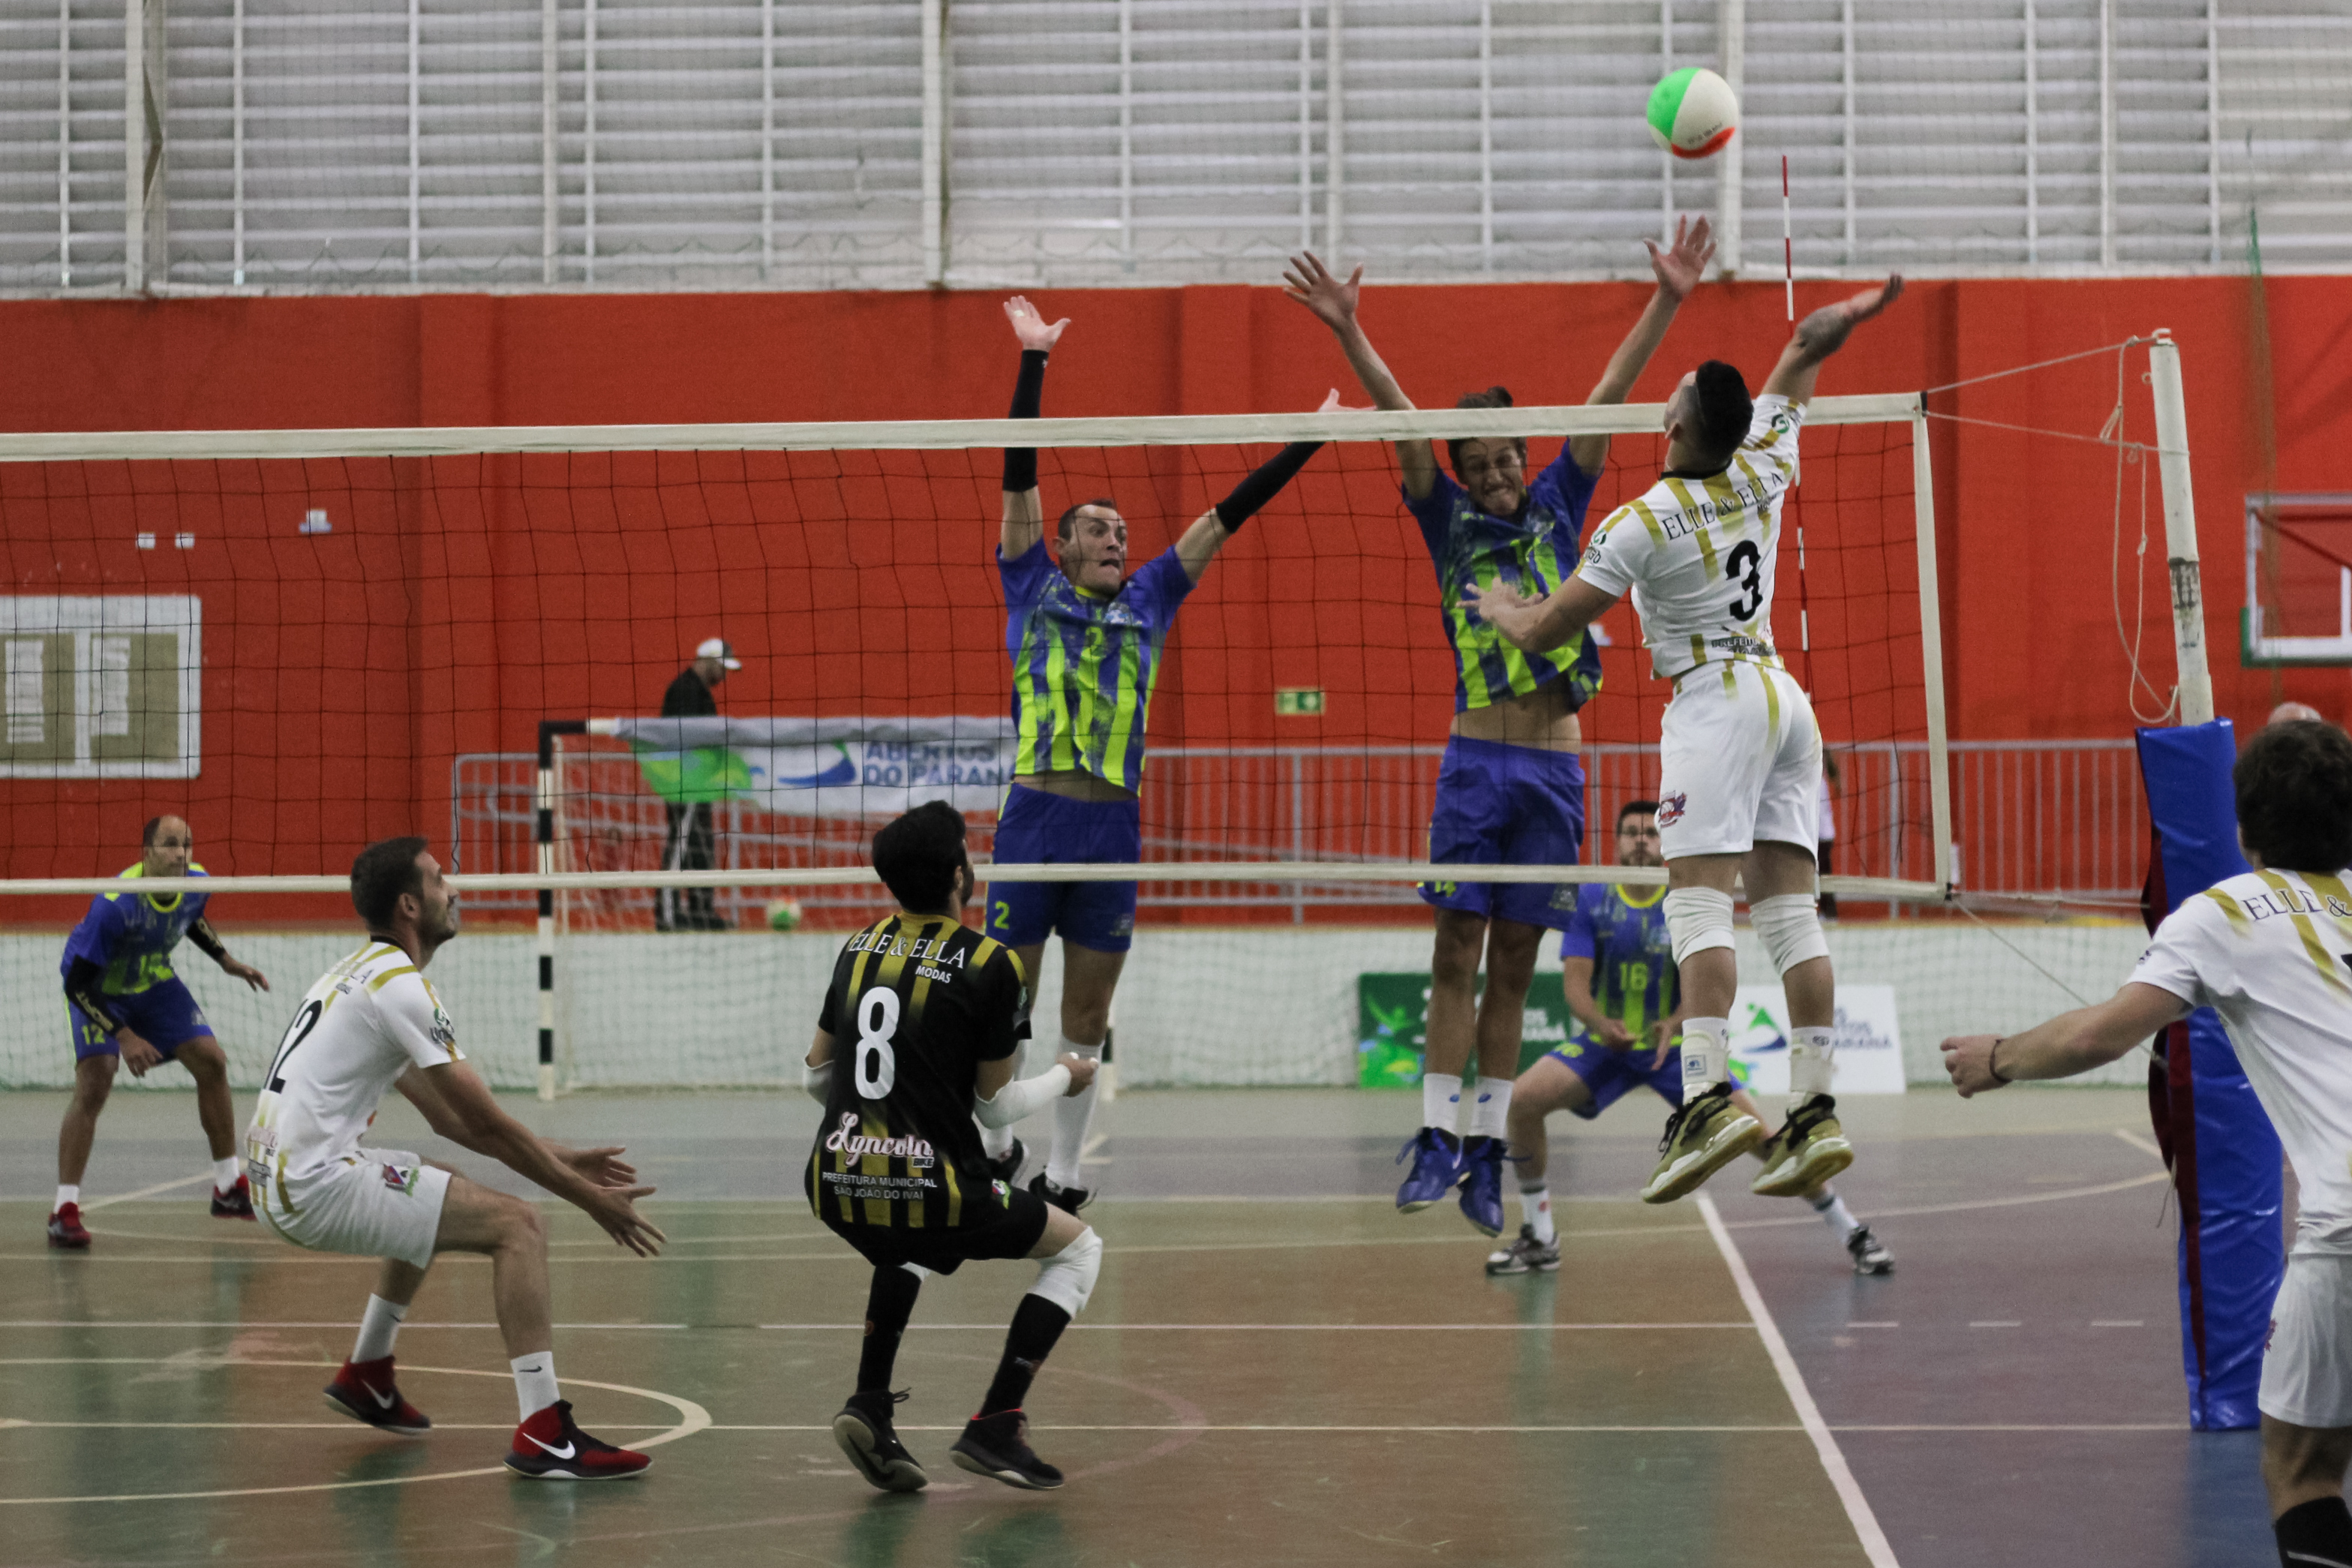 Campeonato Mundial Escolar de Voleibol será em Foz do Iguaçu - DIÁRIO DO  NOROESTE